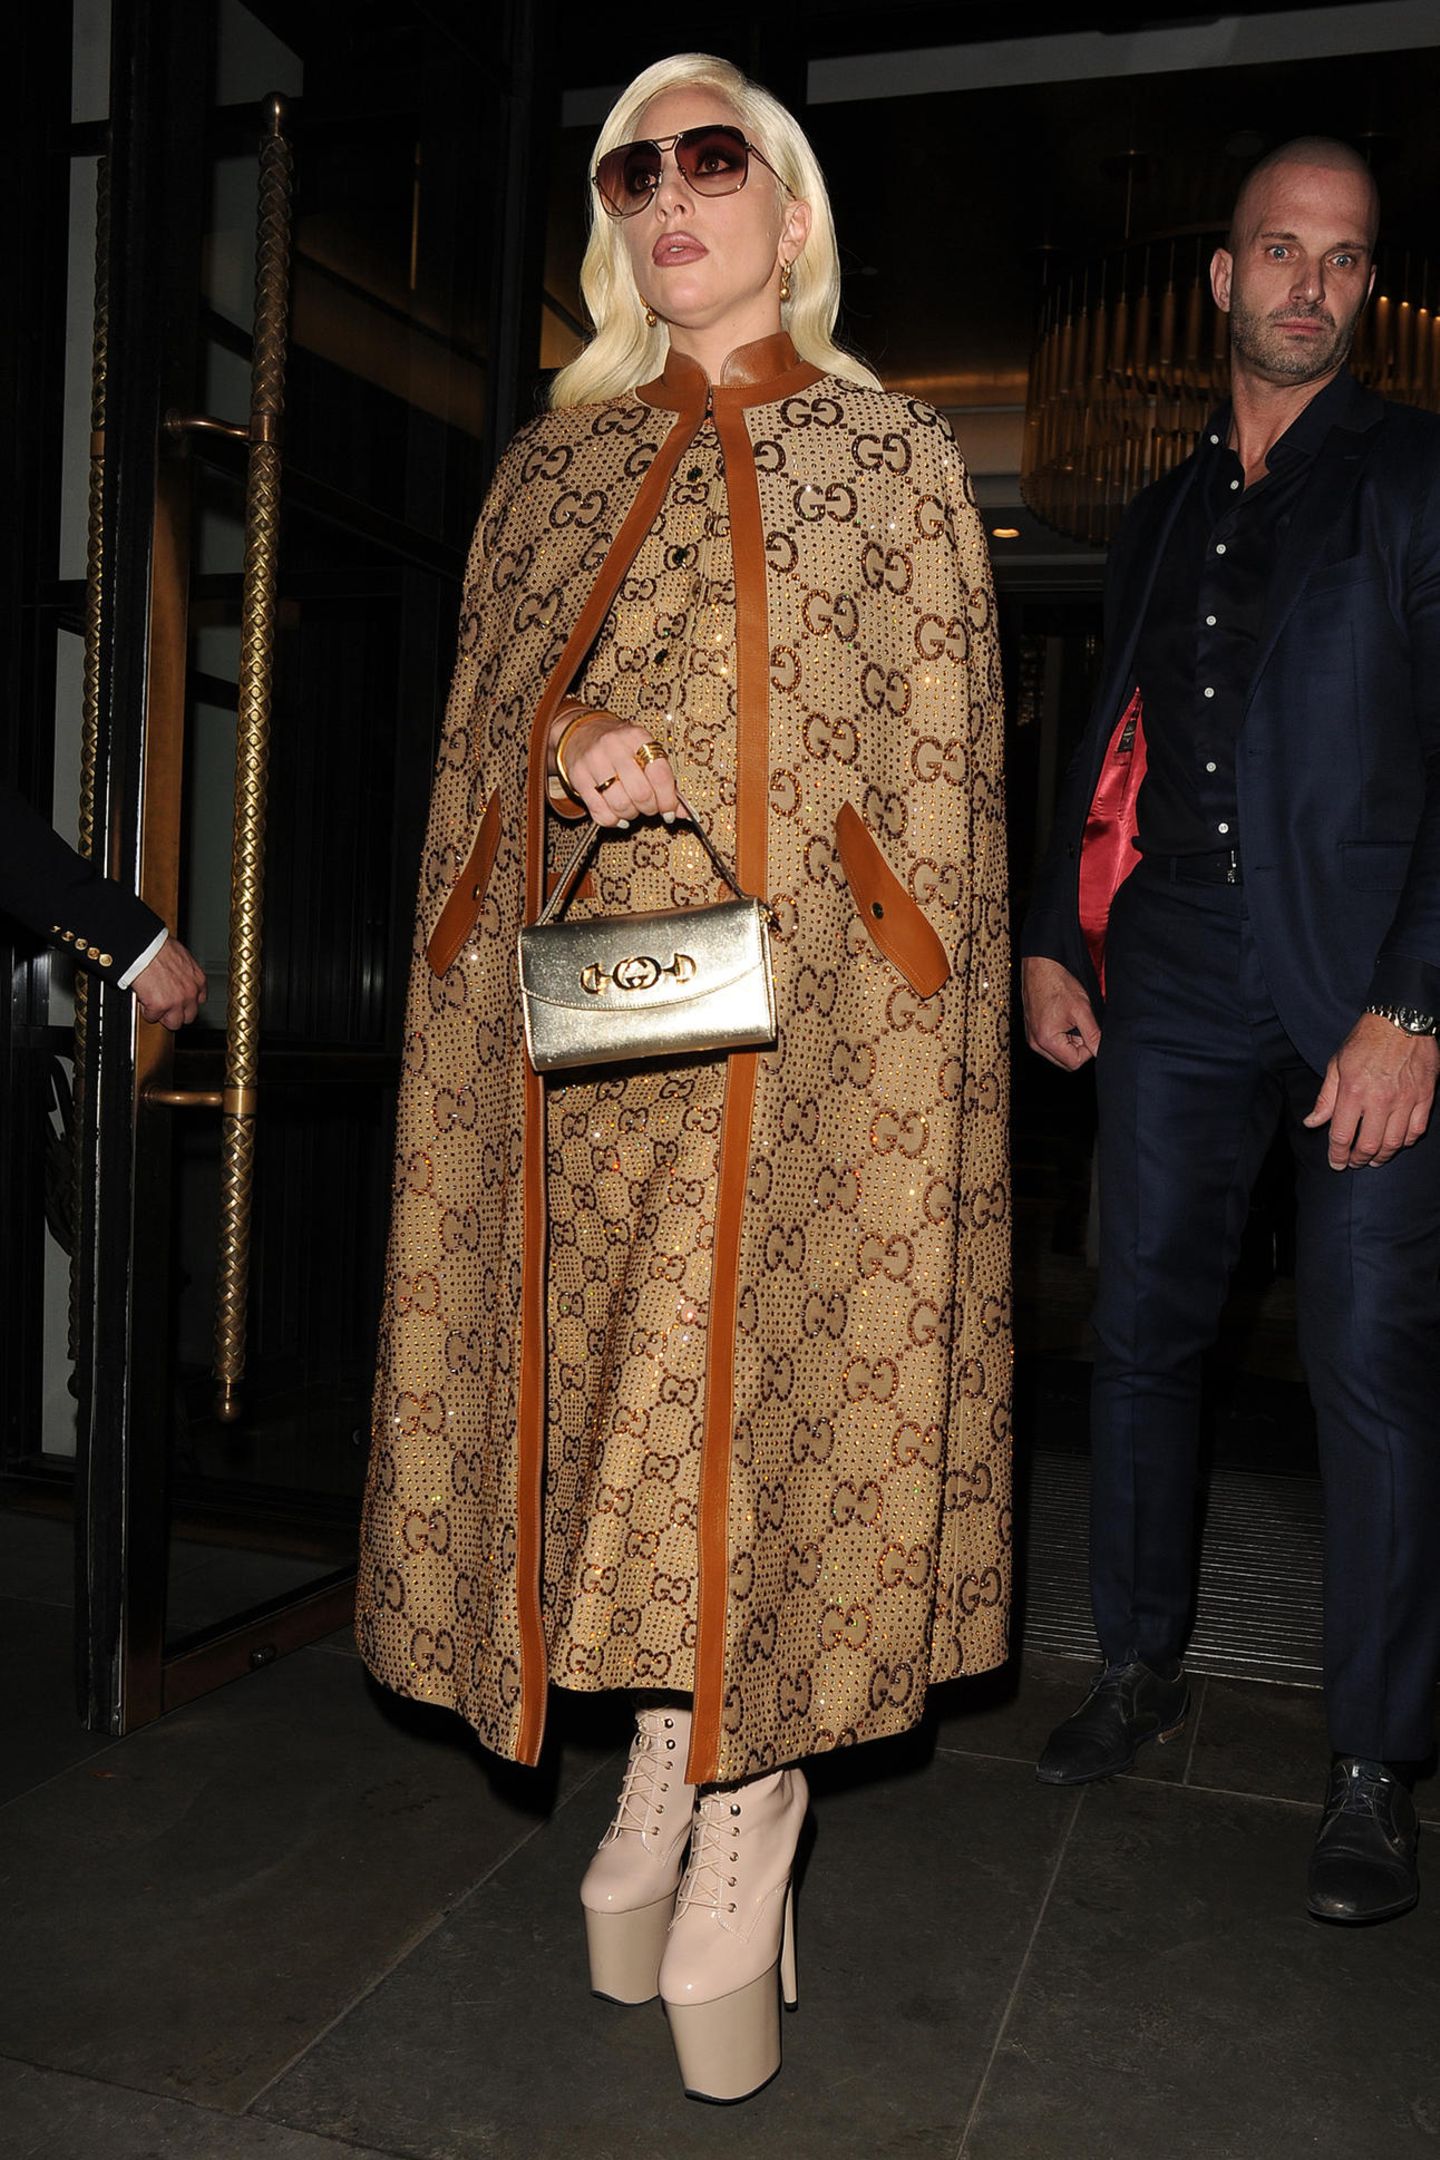 Lady Gaga ist ein absolutes Style-Chamäleon. Ein Label liebt die Musikerin aber heiß und innig: Gucci! Kein Wunder, immerhin sind die Designs, die Alessandro Michele für das italienische Brand kreiert, alles, was GAGA ist. Bunt, laut, schrill. In London zeigt sich die "Born This Way"-Interpretin in einem All-Over-Look des Labels, bestehend aus Mantel und Kleid mit dem ikonischen Gucci-Print. Lady Gaga interpretiert den Look auf ihre ganz eigene Art und Weise, indem sie dazu gefährlich hohe Lackboots sowie XXL-Shades kombiniert.